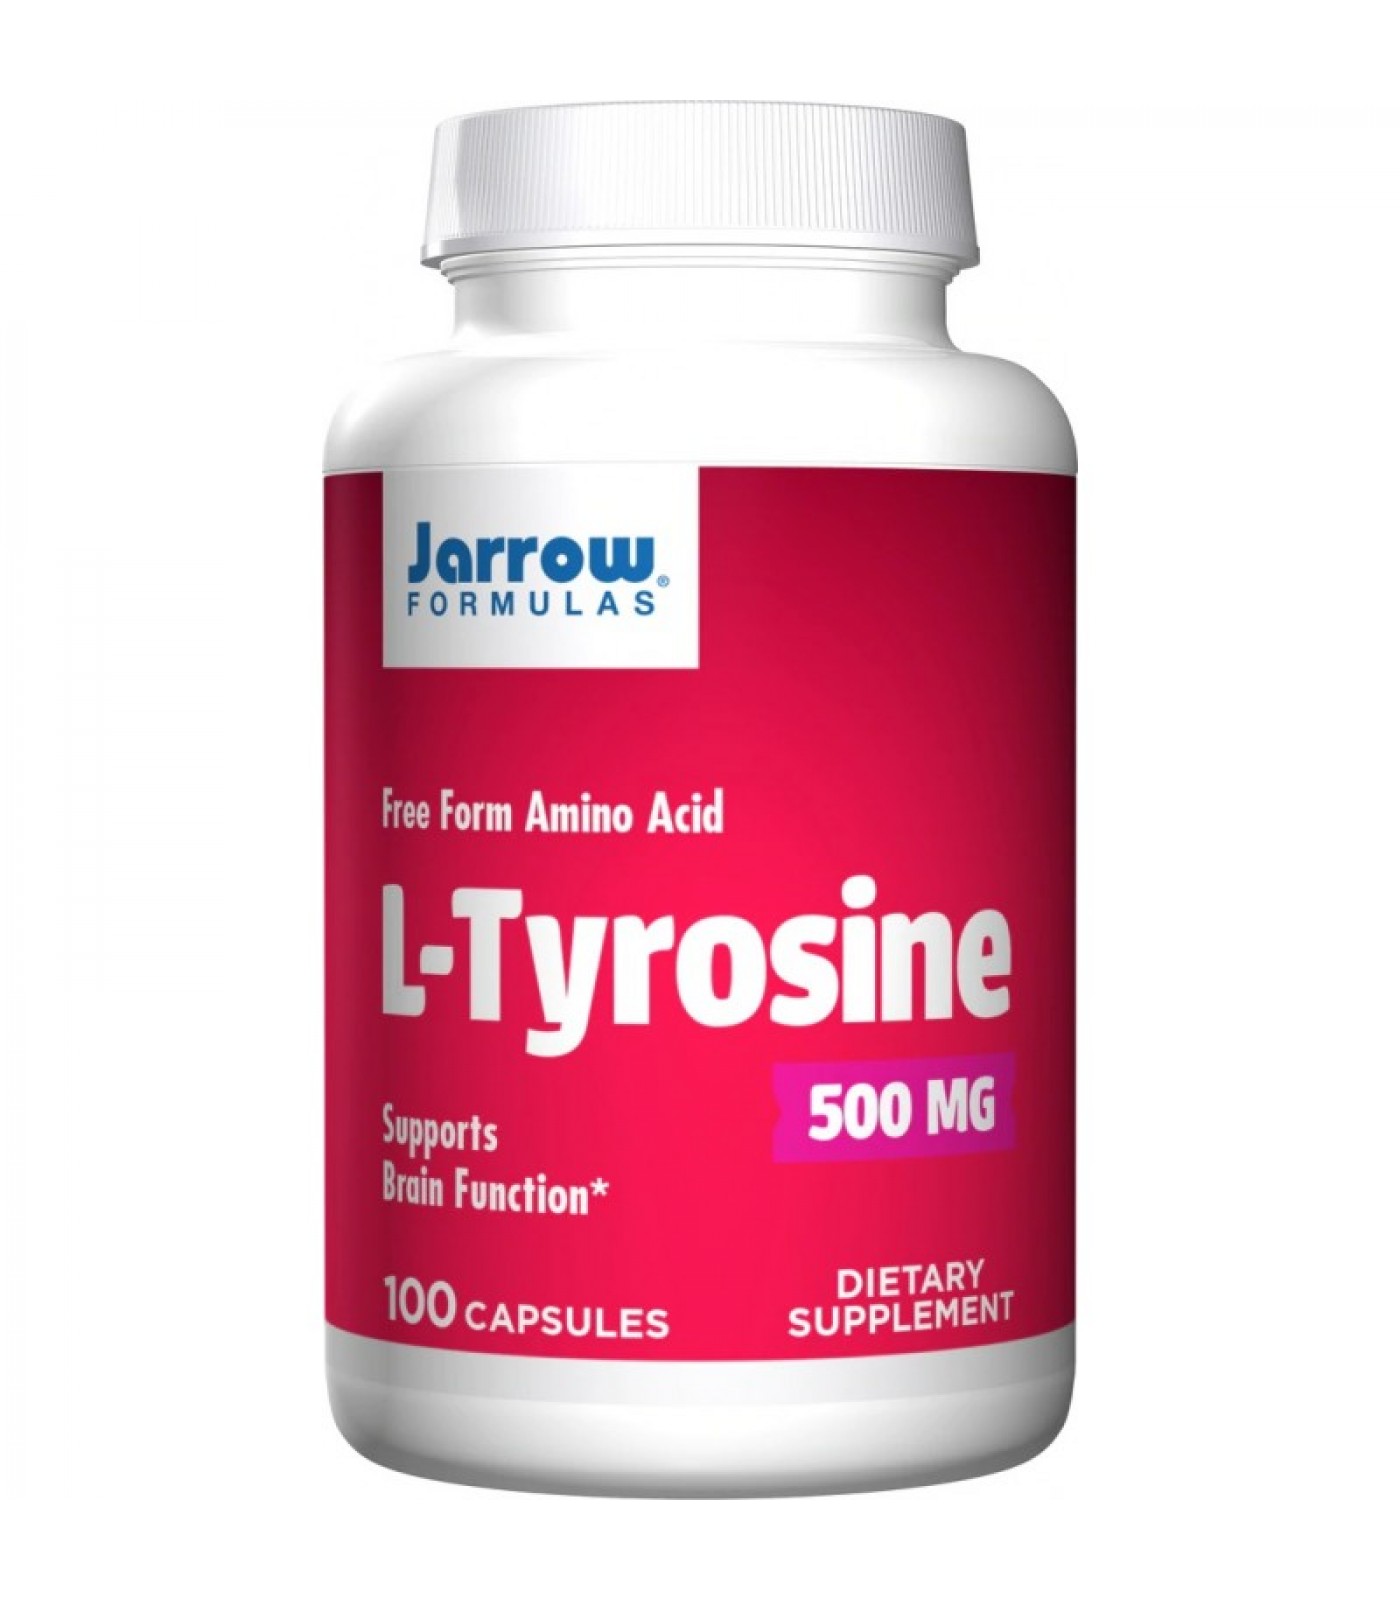 Jarrow Formulas L-Tyrosine 500mg - Тирозин